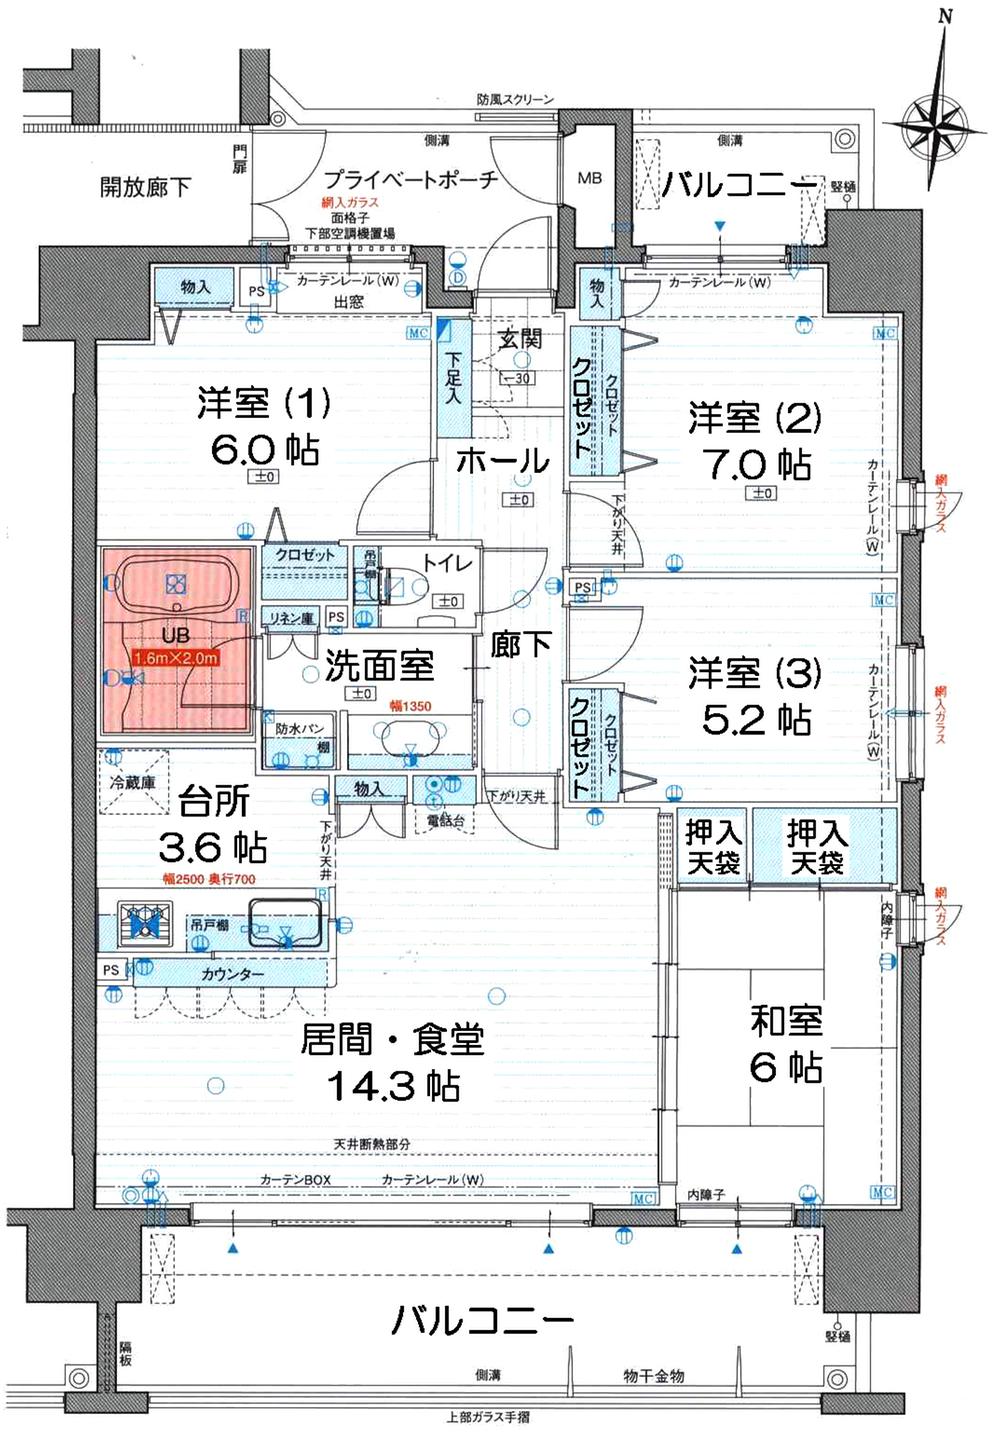 Floor plan. 4LDK, Price 24,800,000 yen, Footprint 92.4 sq m , Between the balcony area 20.5 sq m floor plan